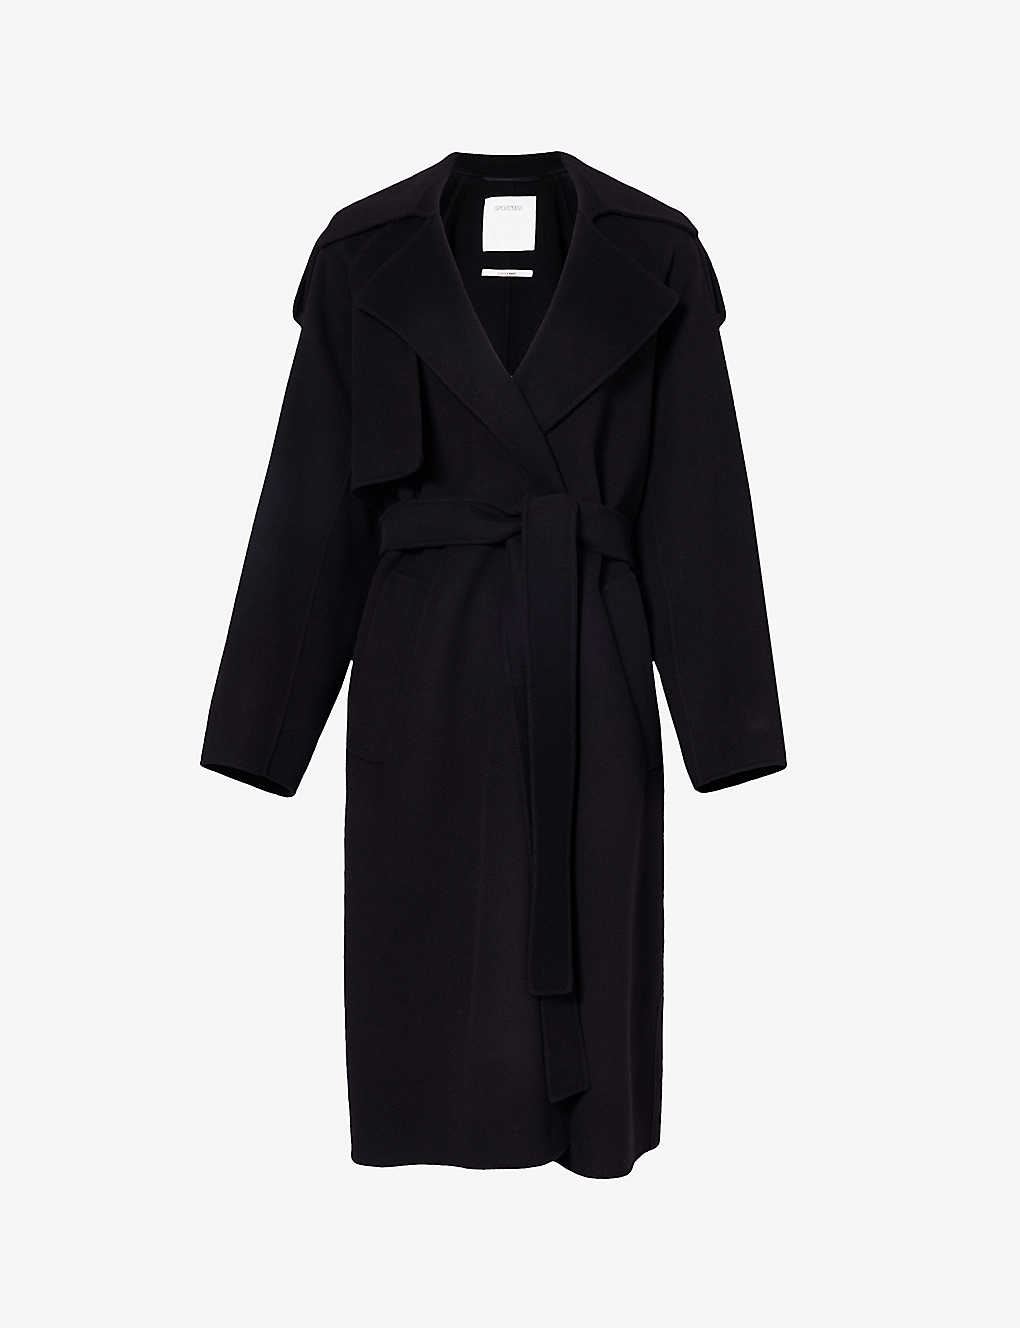 Shop Sportmax Women's Black Fiore Notch-lapel Wool Coat